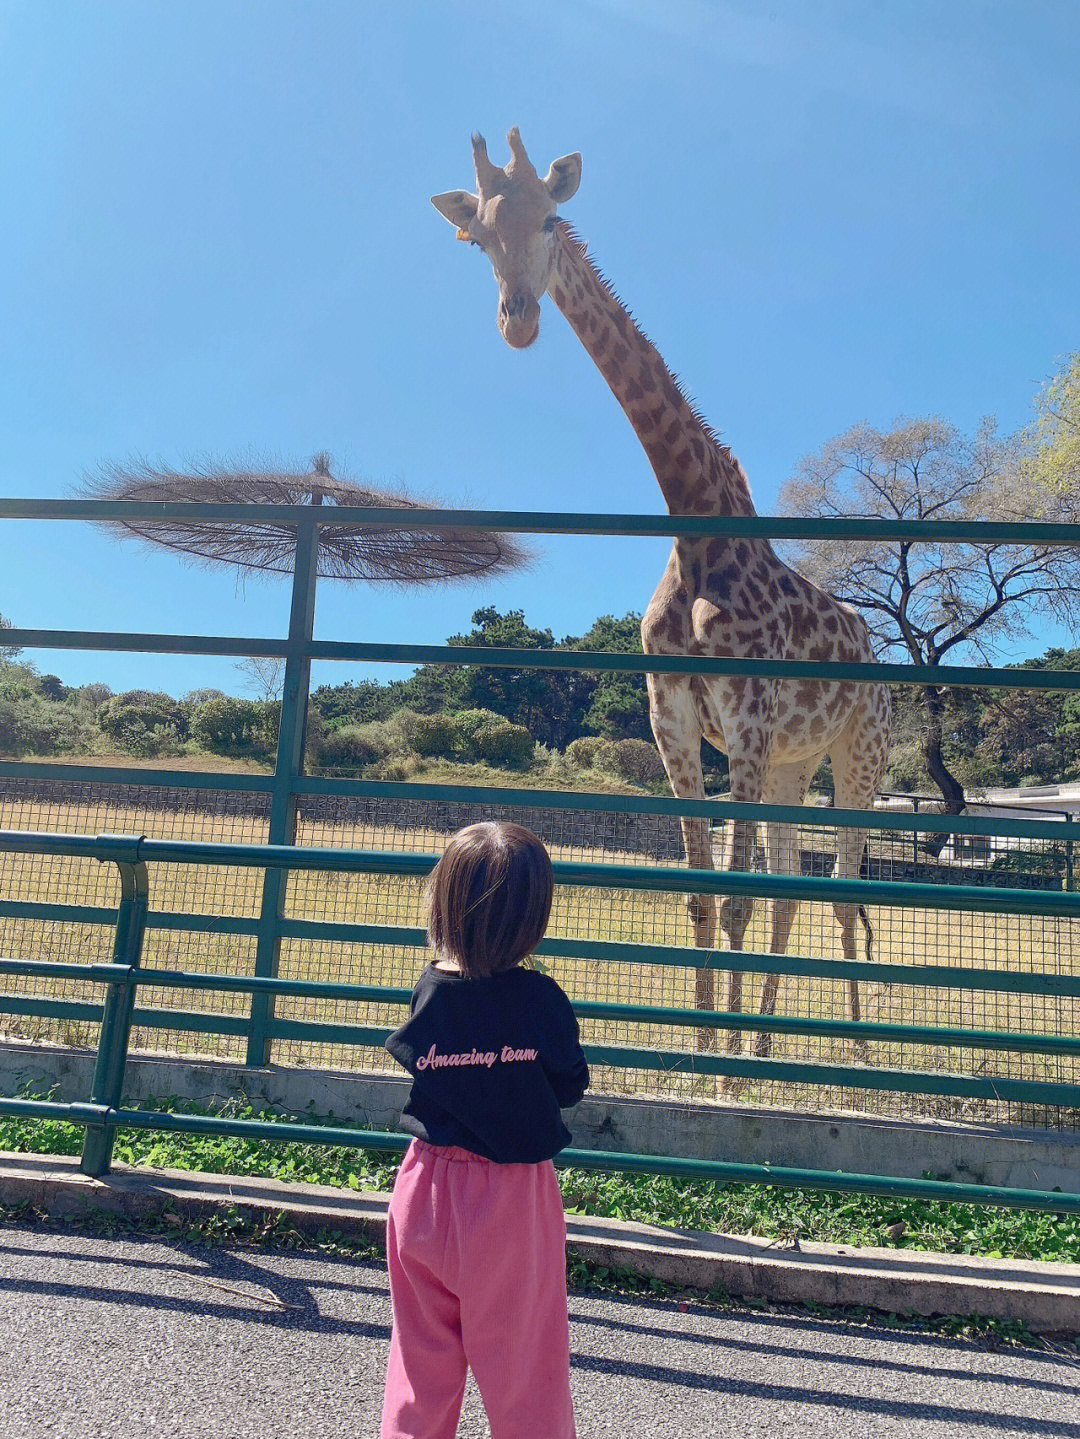 长颈鹿与人身高对比图片